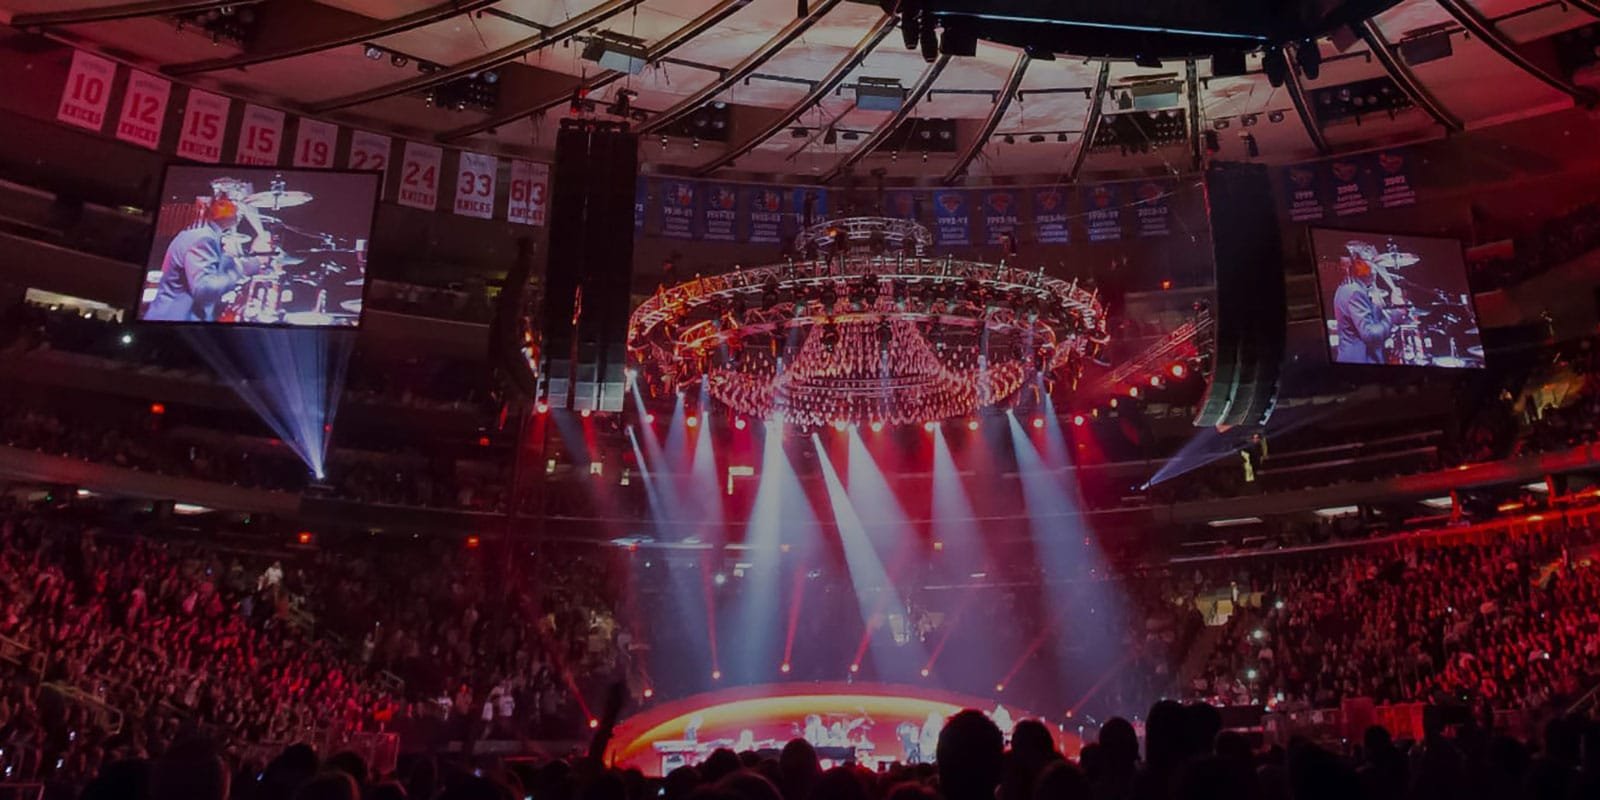 Madison Square Garden Concert 1600x800 1 Live Nation pedirá prueba de vacunación obligatoria para entrar a conciertos Summa Inferno | Metal + Rock & Alternative Music